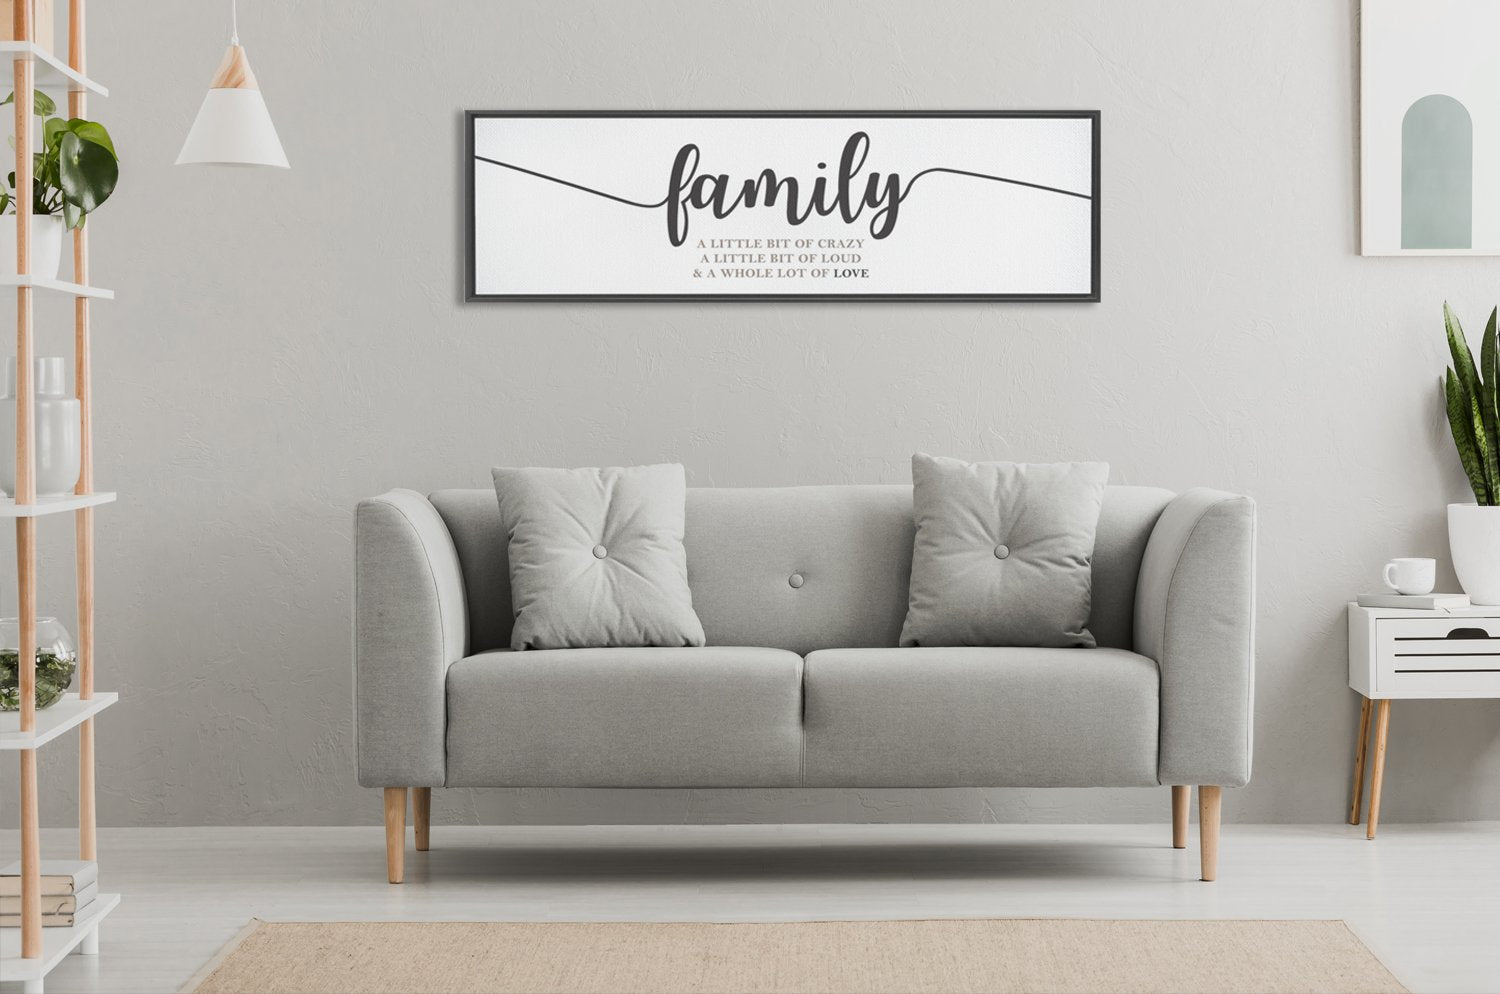 family wall decor ideas